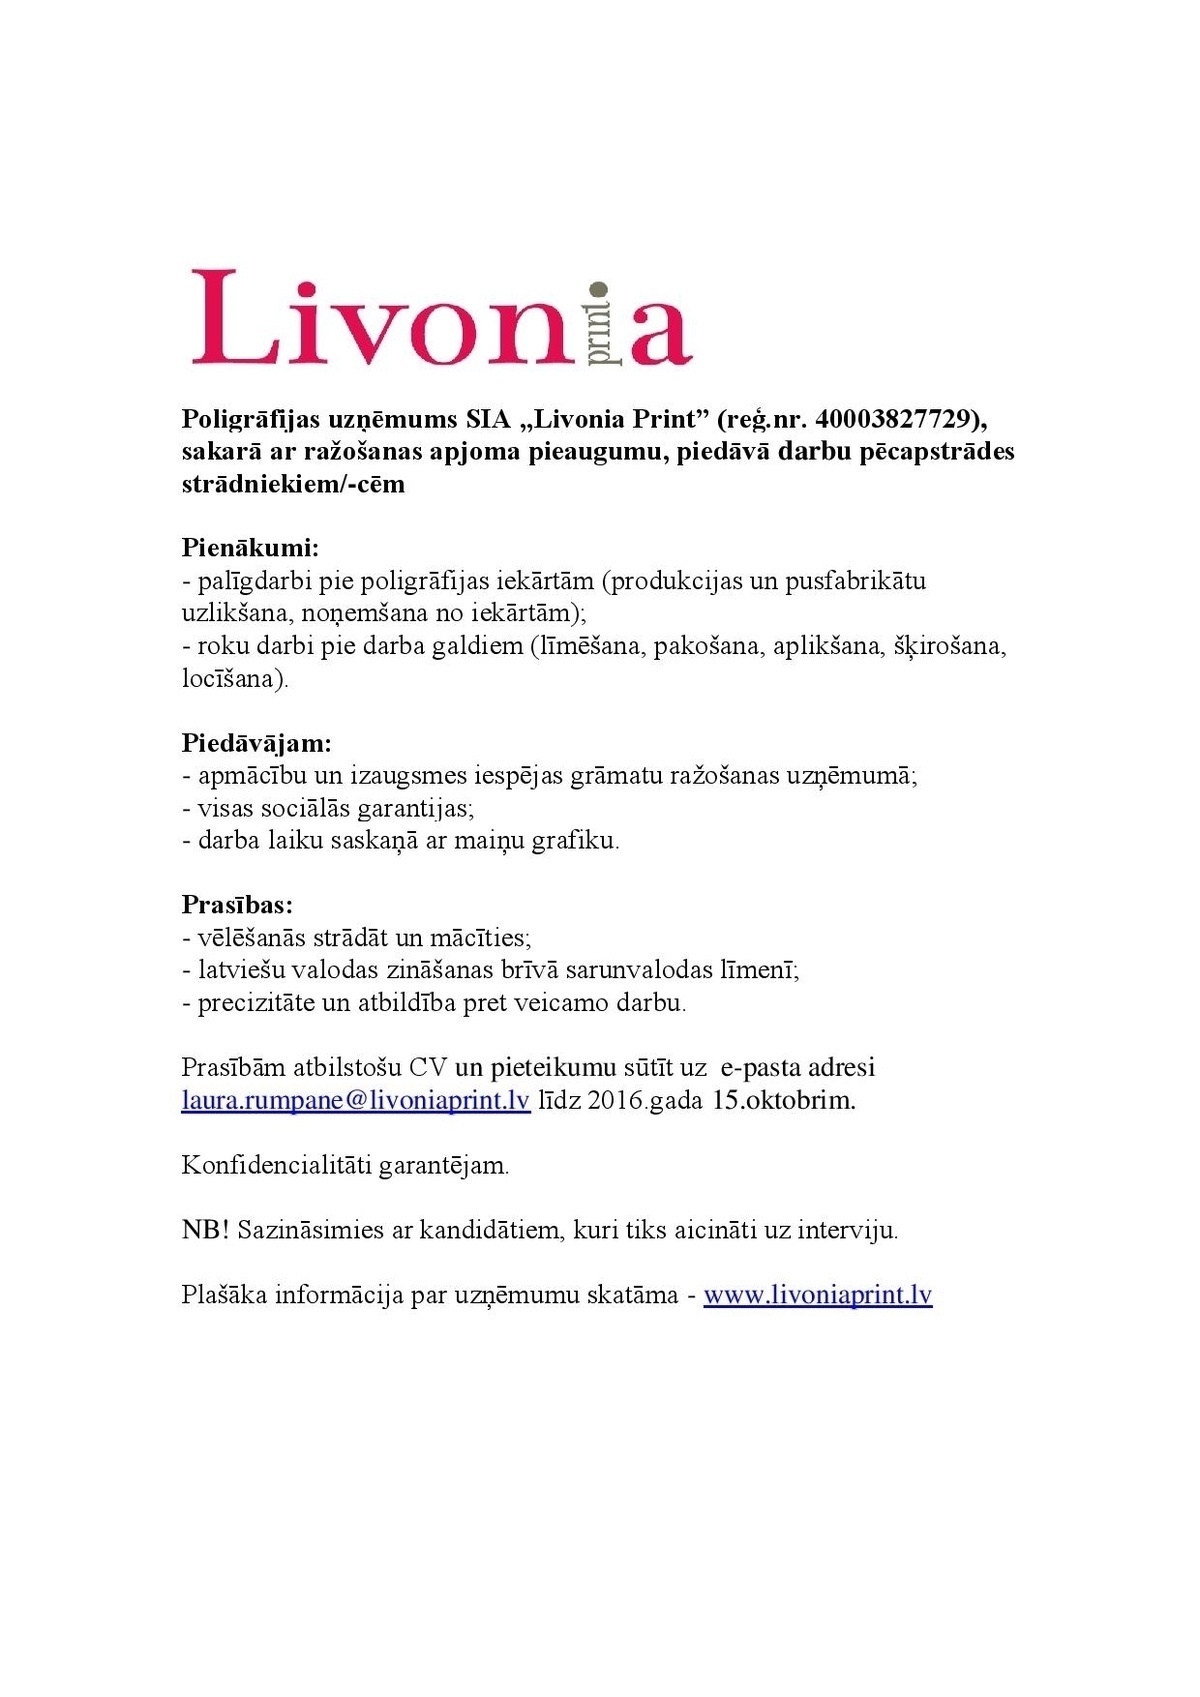 Livonia Print, SIA Pēcapstrādes strādniekiem/-cēm